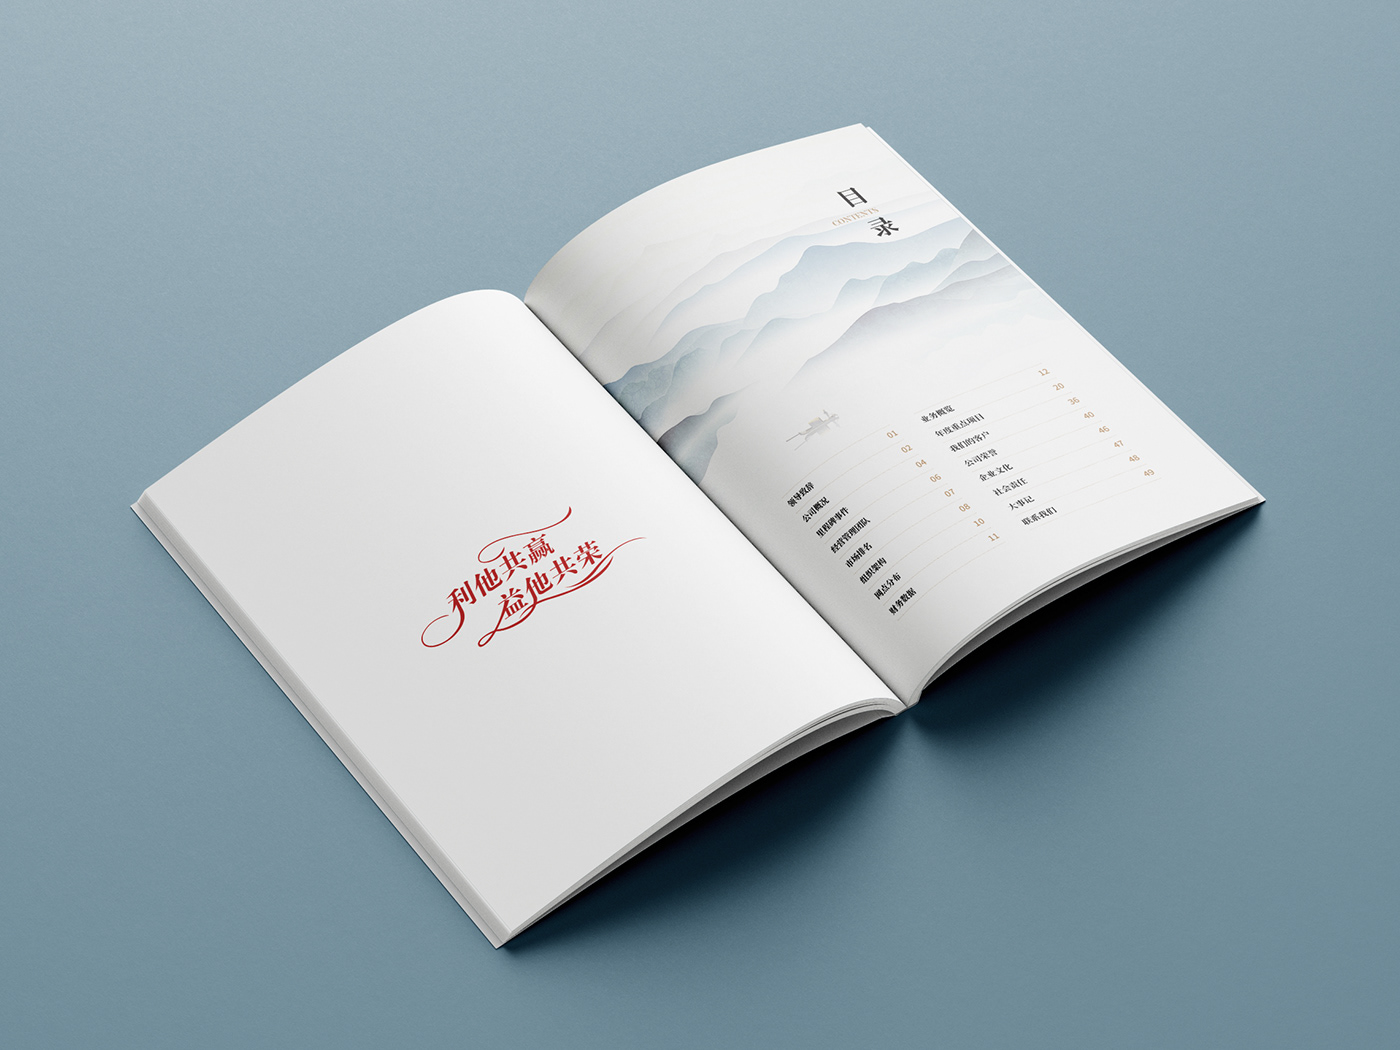 中国风画册 企业画册 宣传册 平面设计 手册 排版 版式设计 画册 画册设计